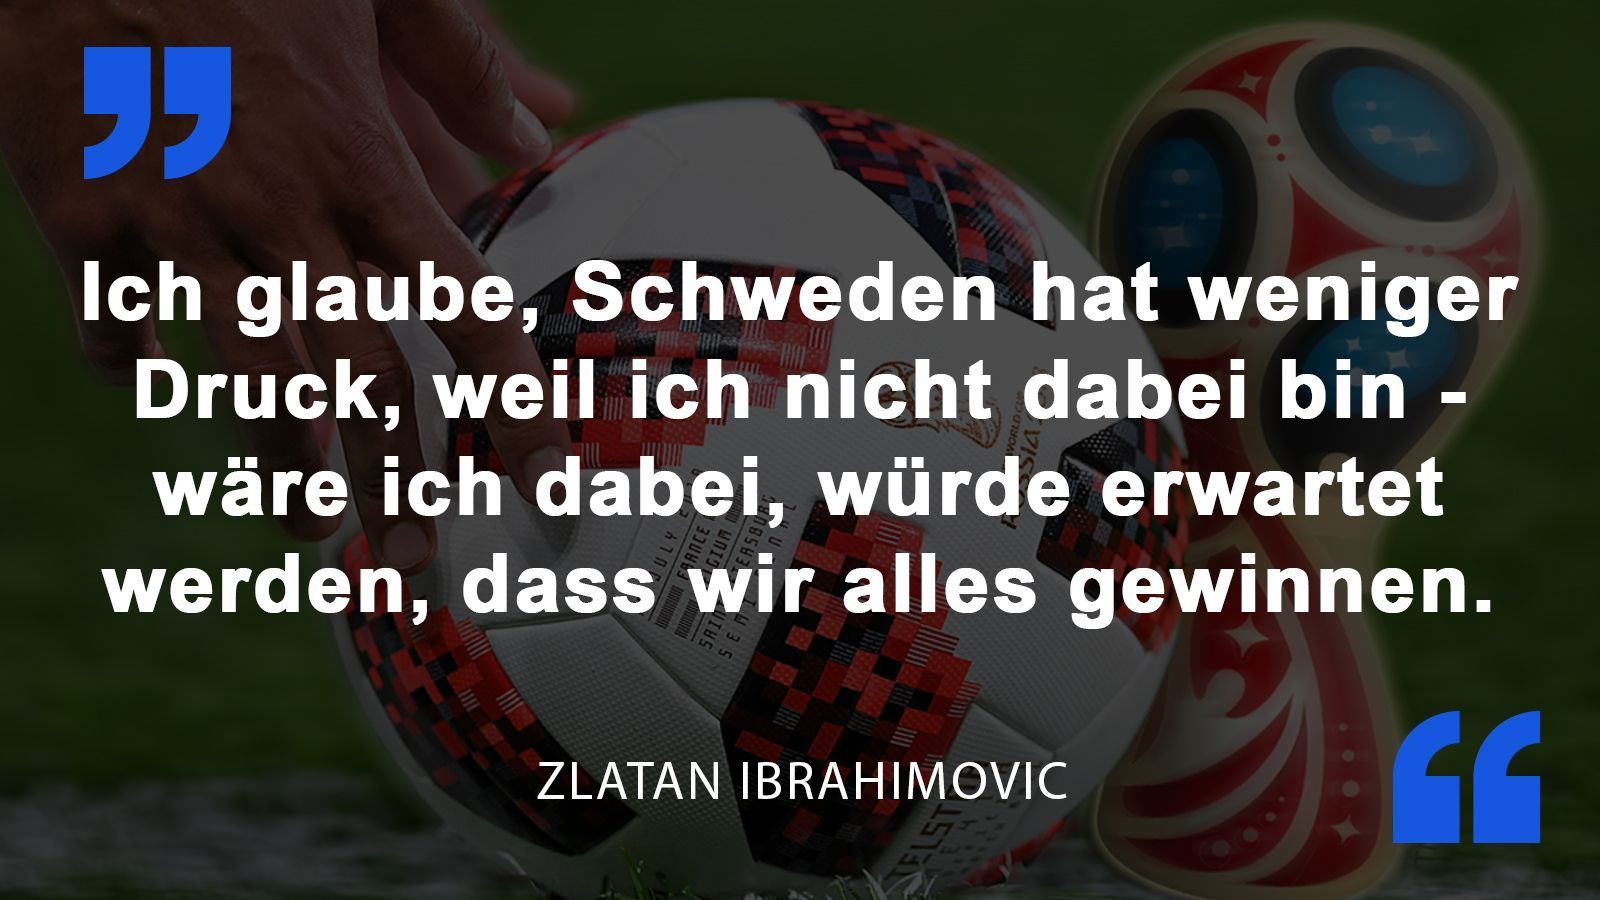 
                <strong>Zlatan Ibrahimovic</strong><br>
                Der "Fußballgott" vor dem WM-Start über Schweden.
              